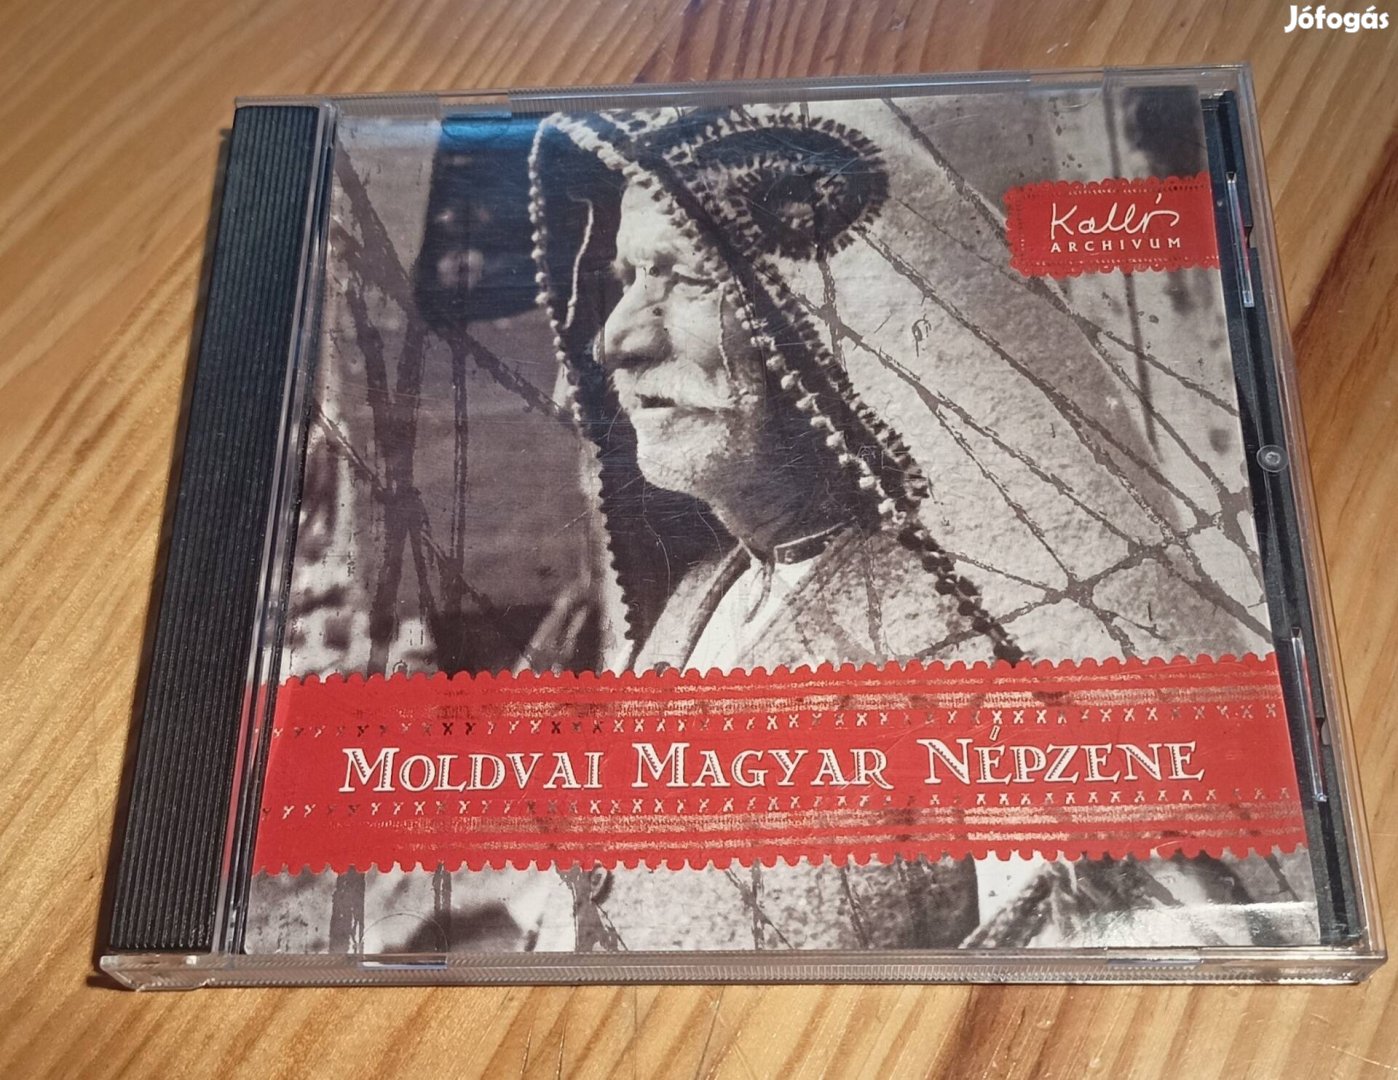 Moldvai magyar népzene CD